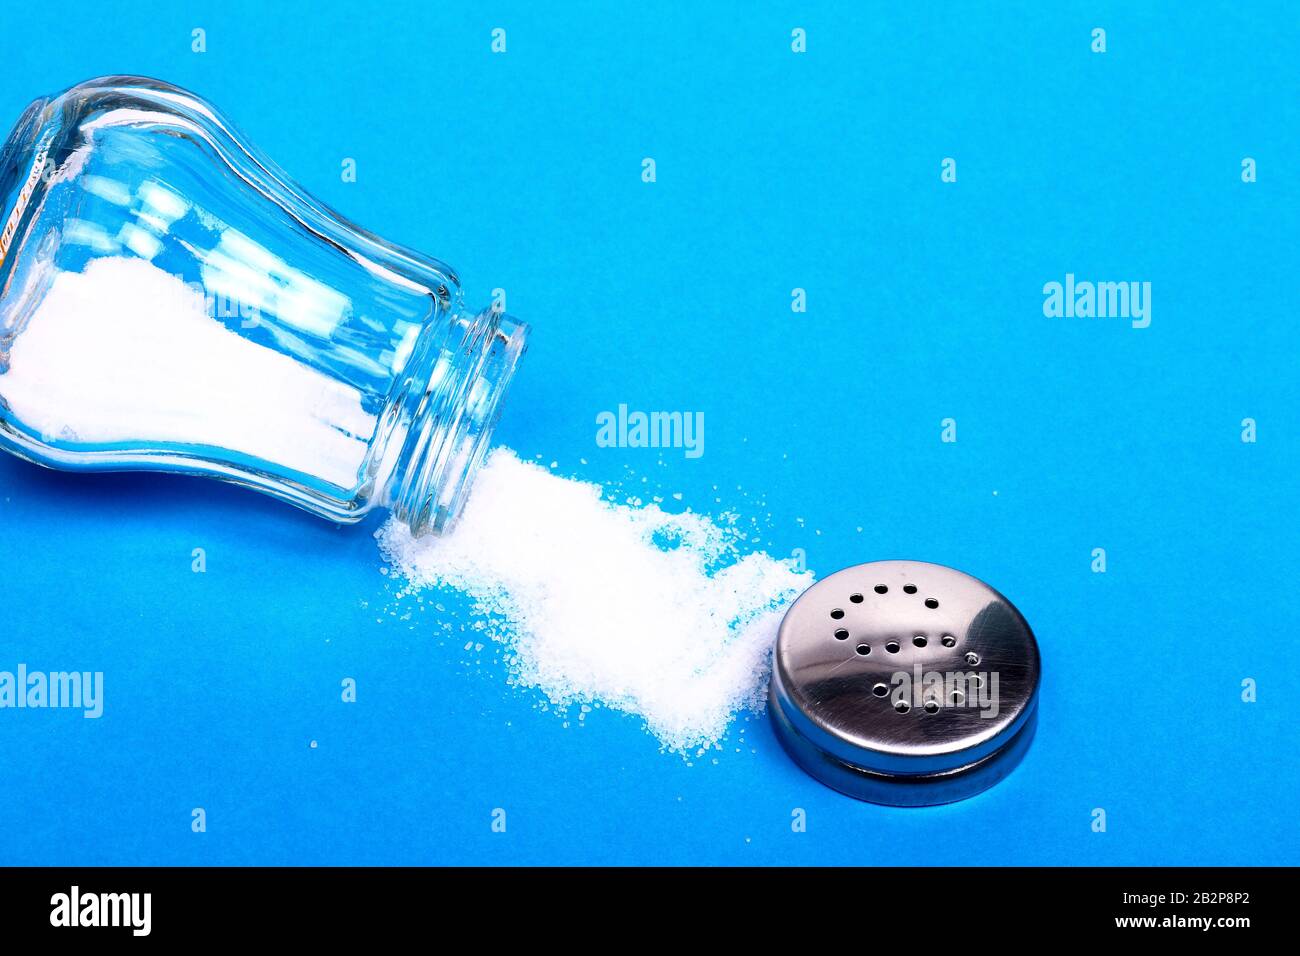 Light bulb and salt shaker Stock Photo